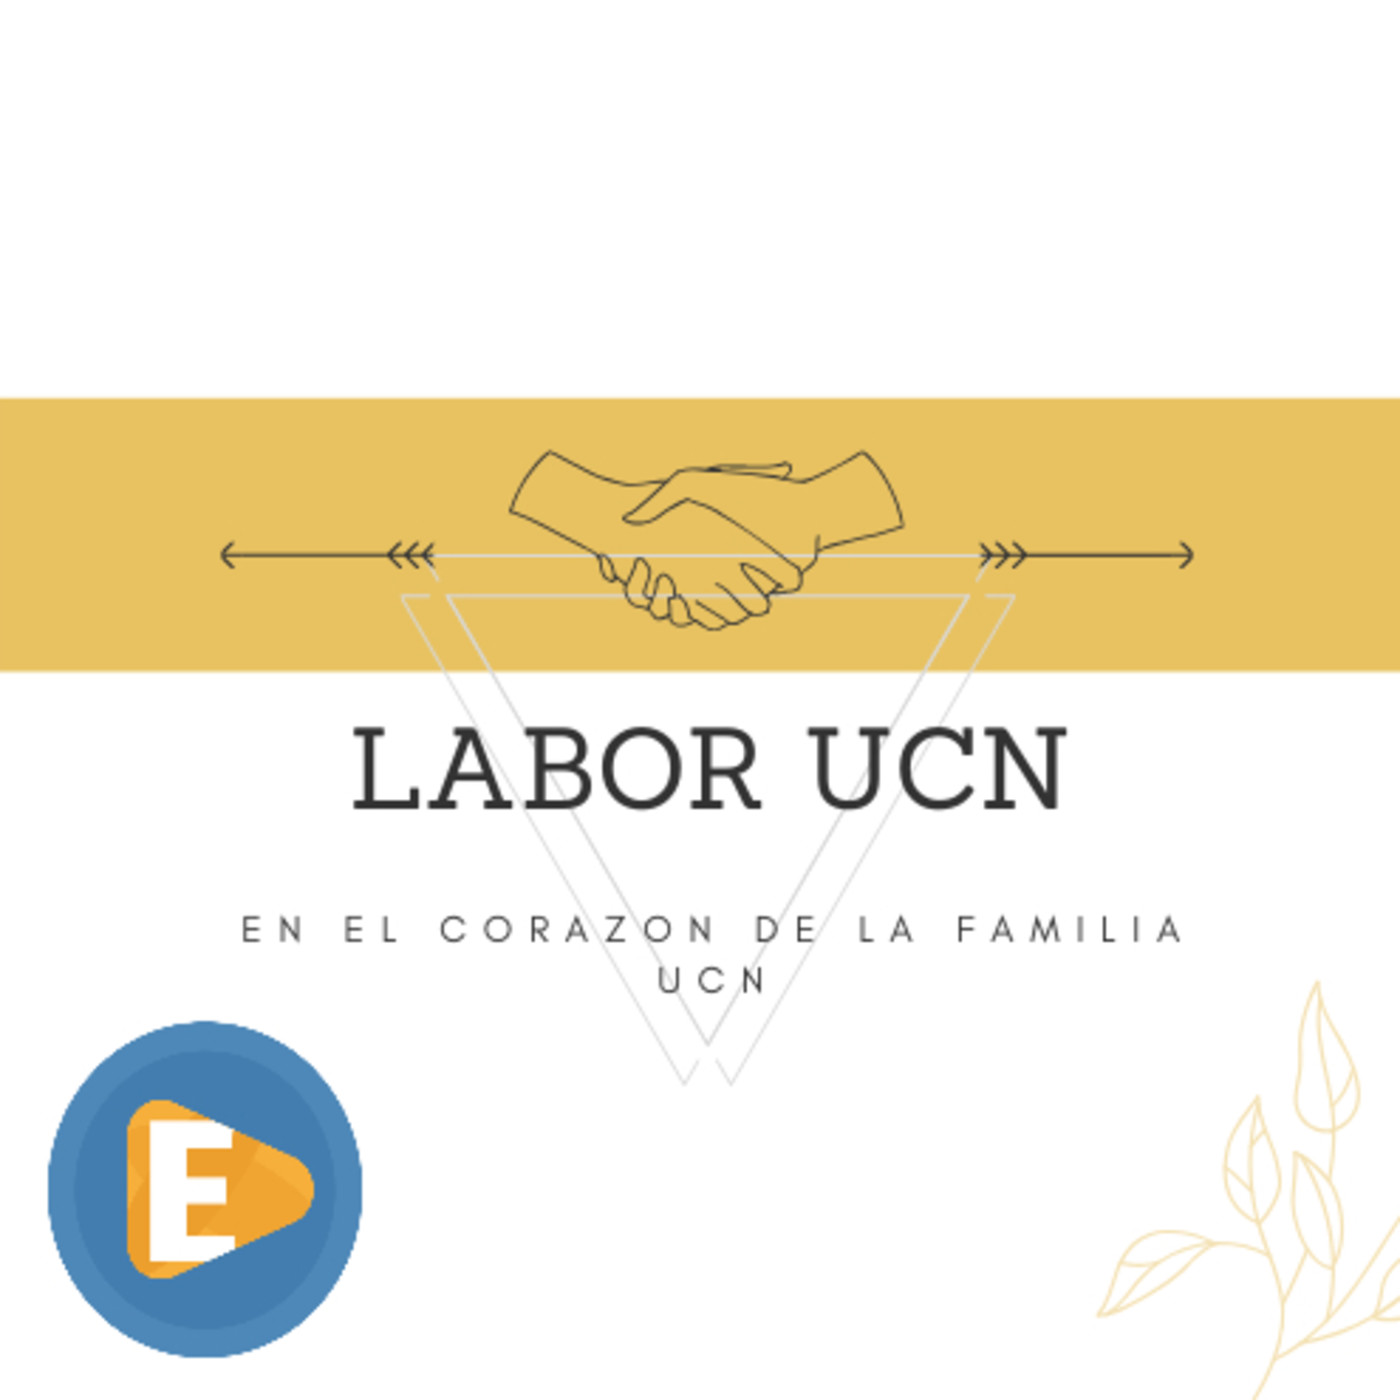 Labor UCN - Cira Mira, Coordinadora de Pastoral y Bienestar